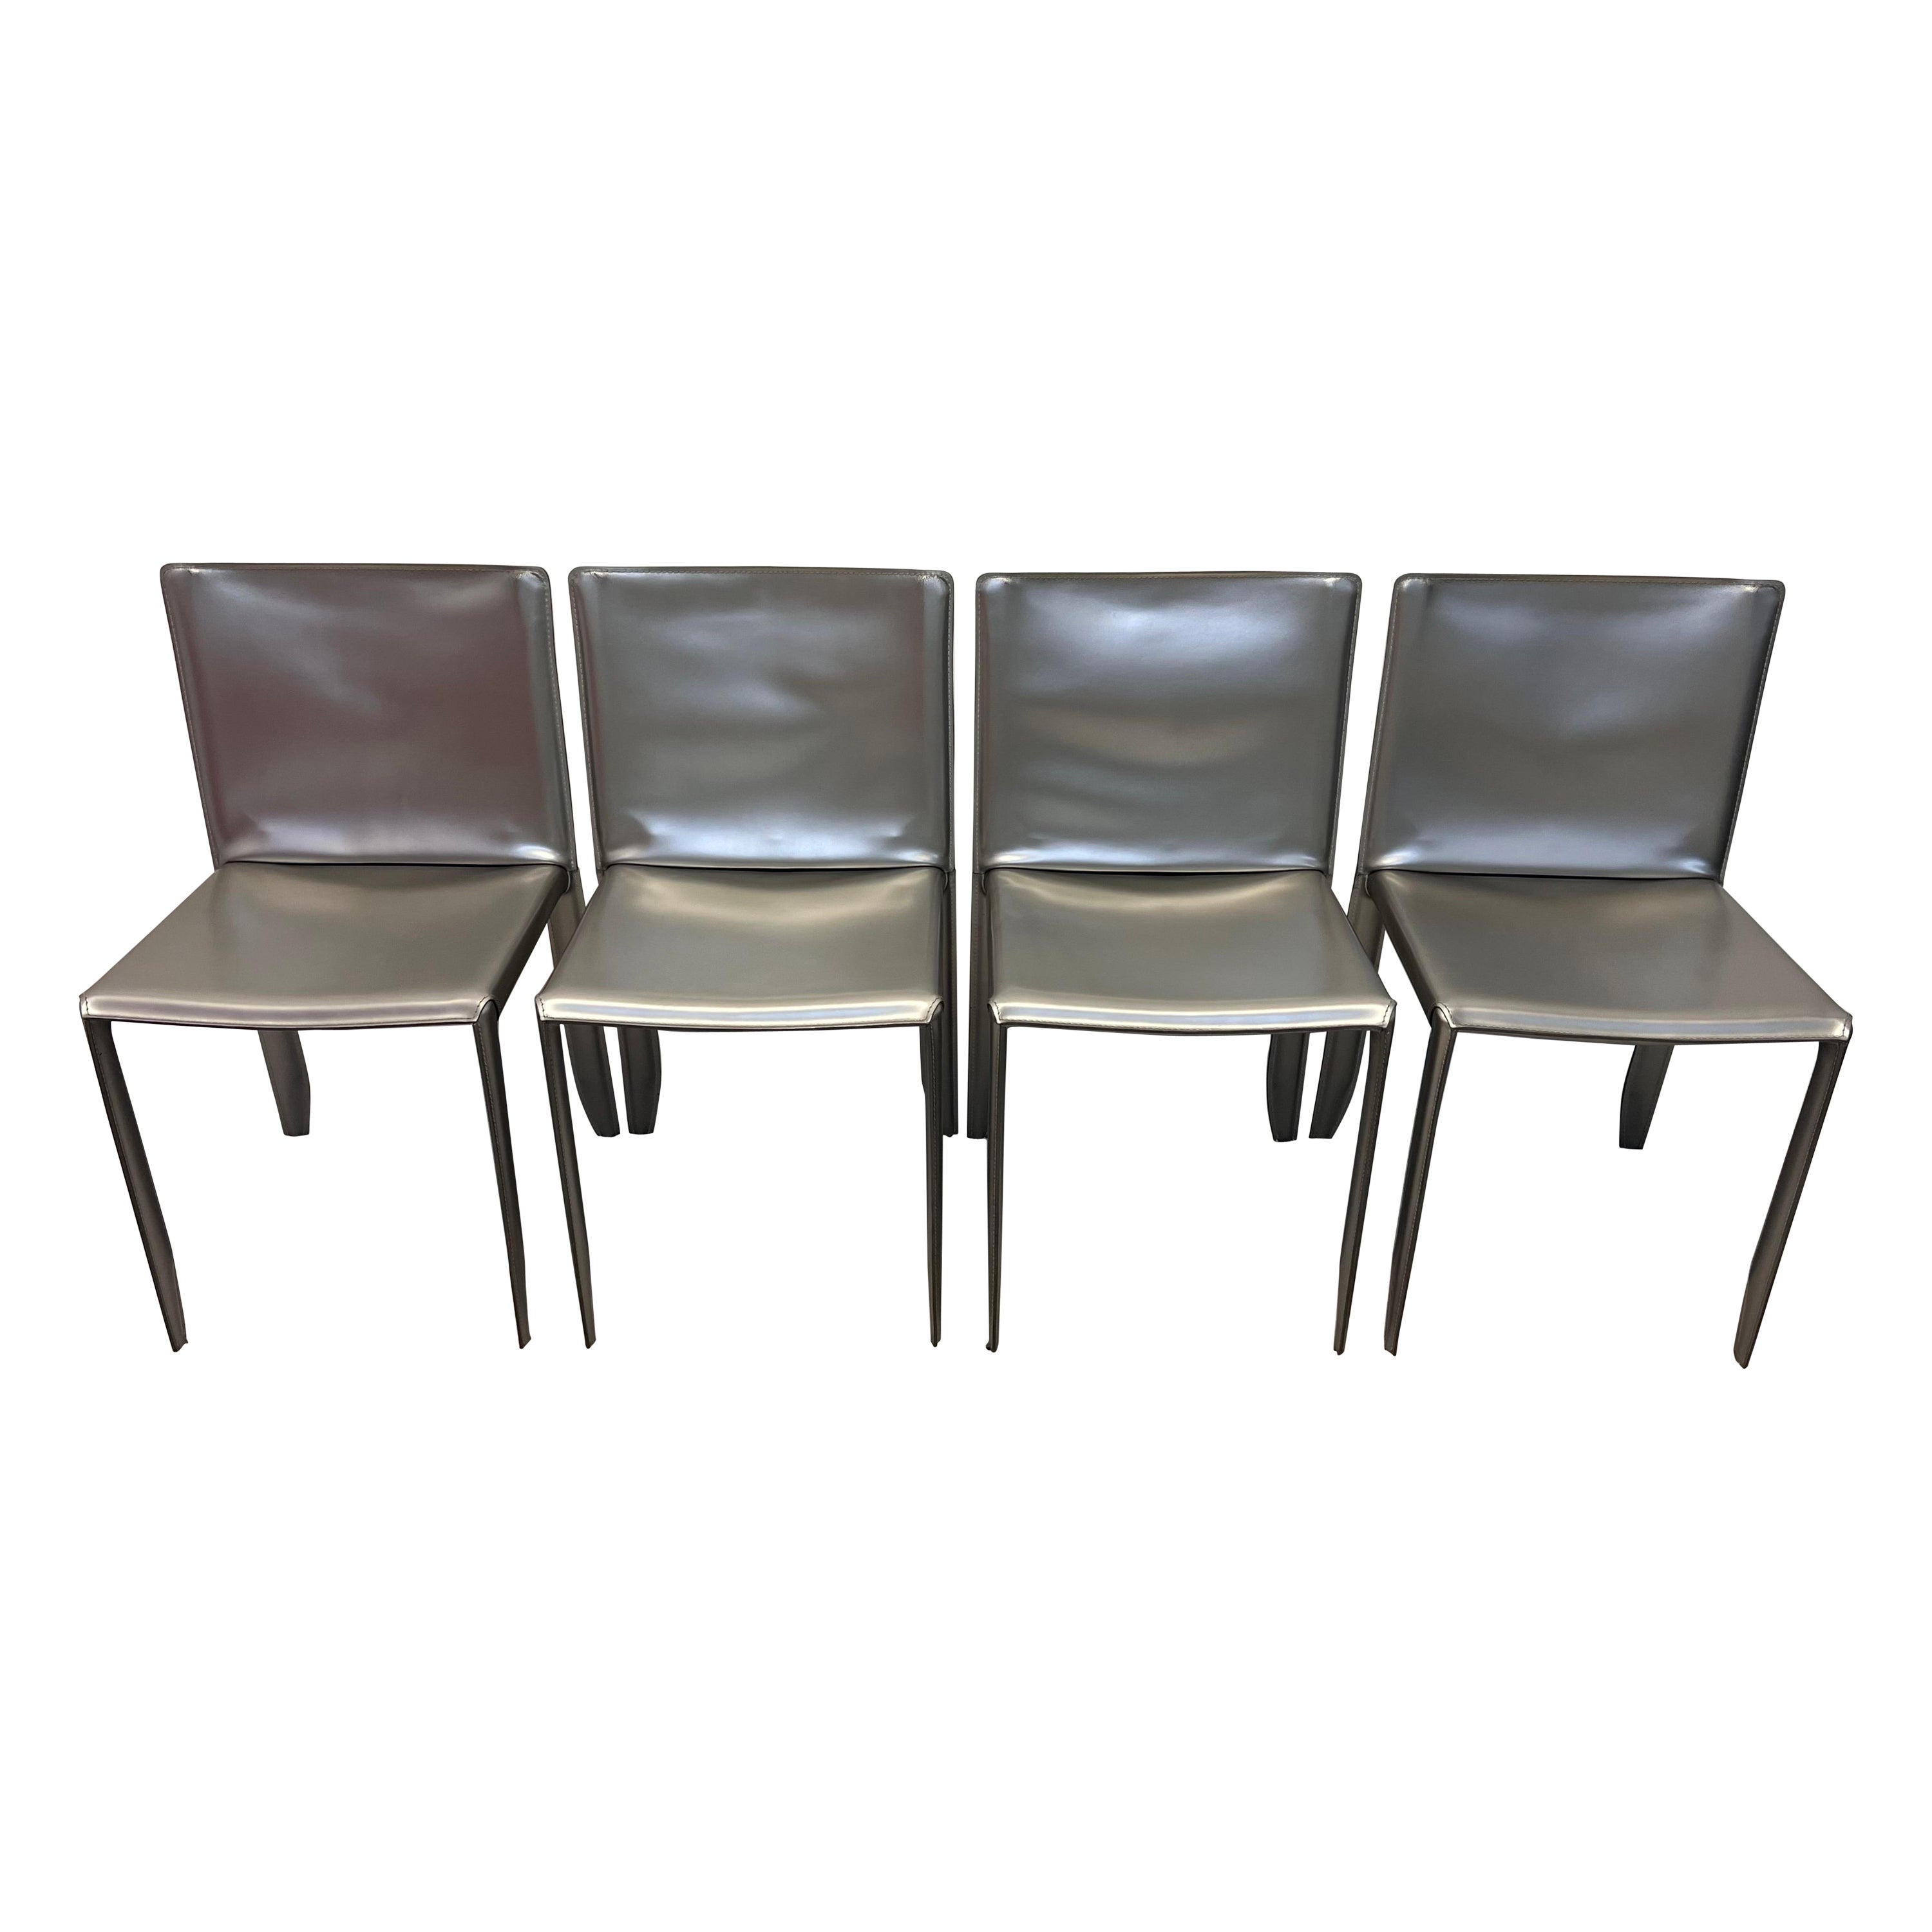 Studio Kronos Metallic Leather Piuma Chairs for Cattelan Italia, Set of Four